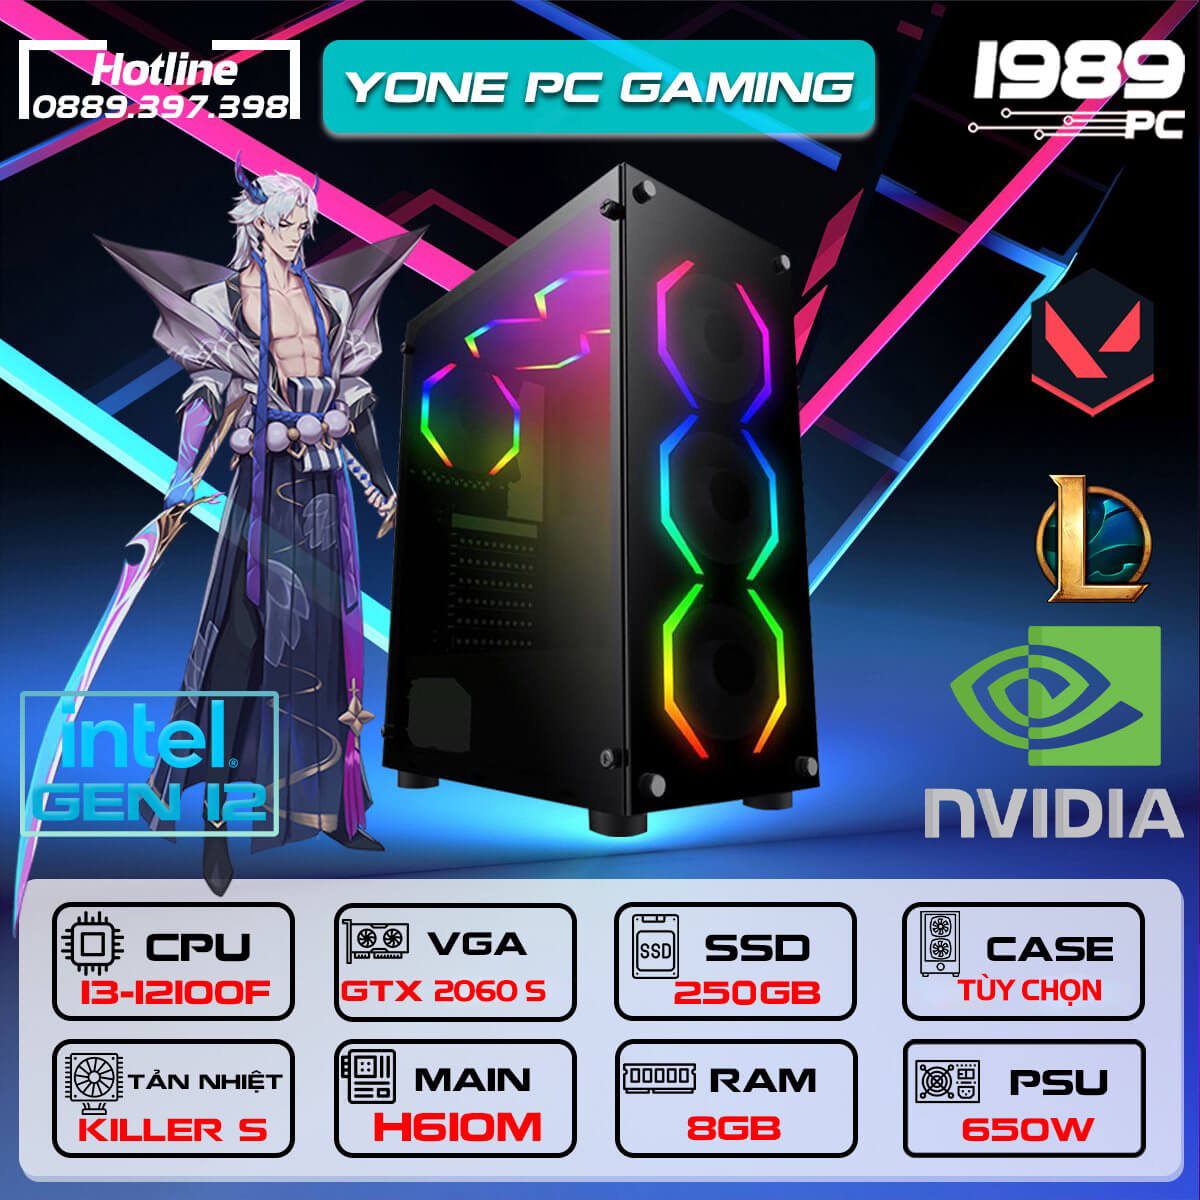 YONE PC GAMING